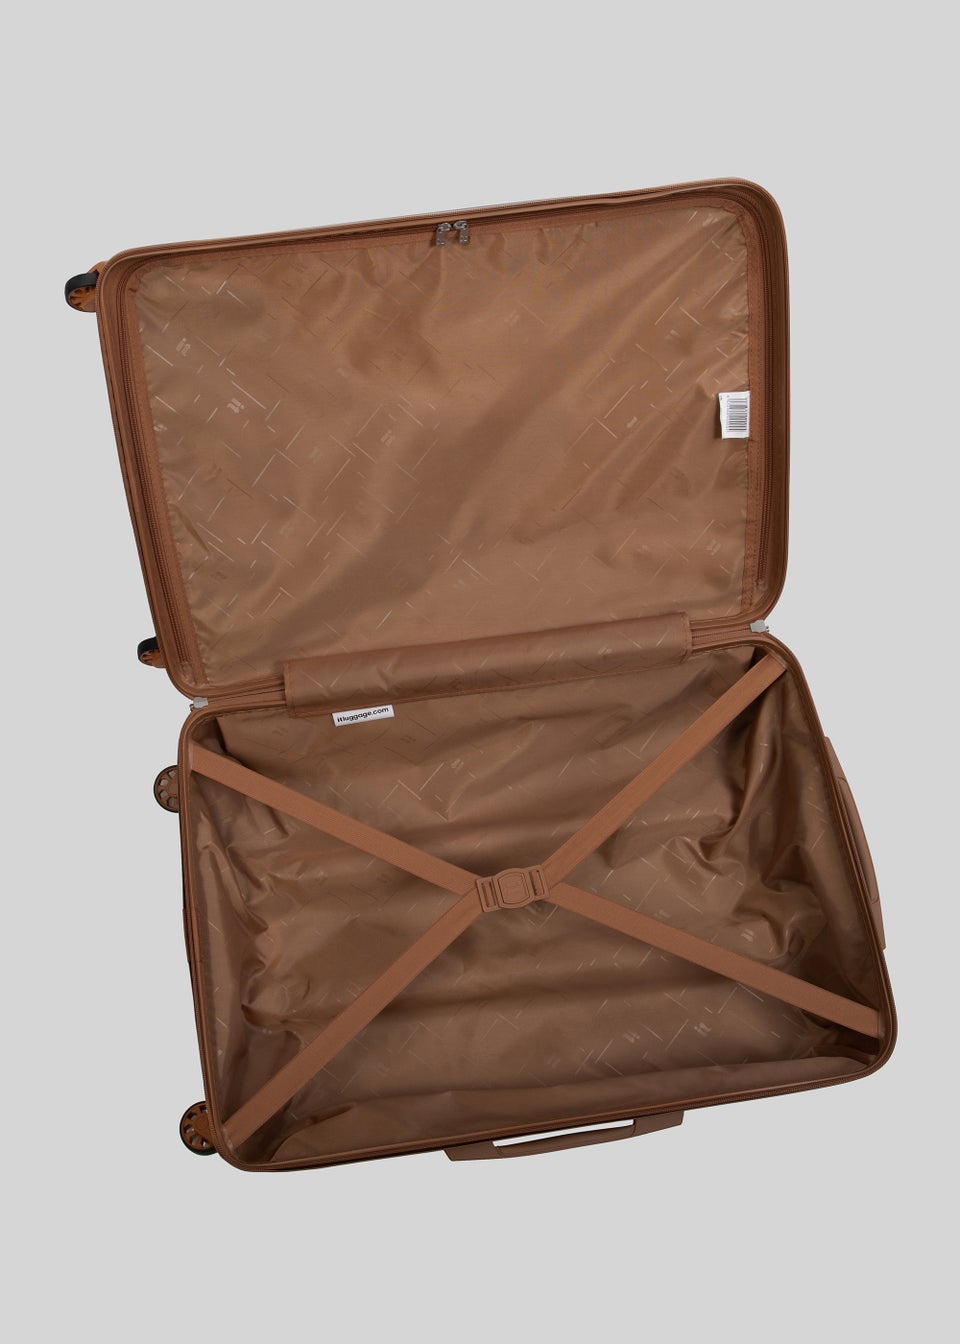 IT Luggage Black Hard Shell Suitcase